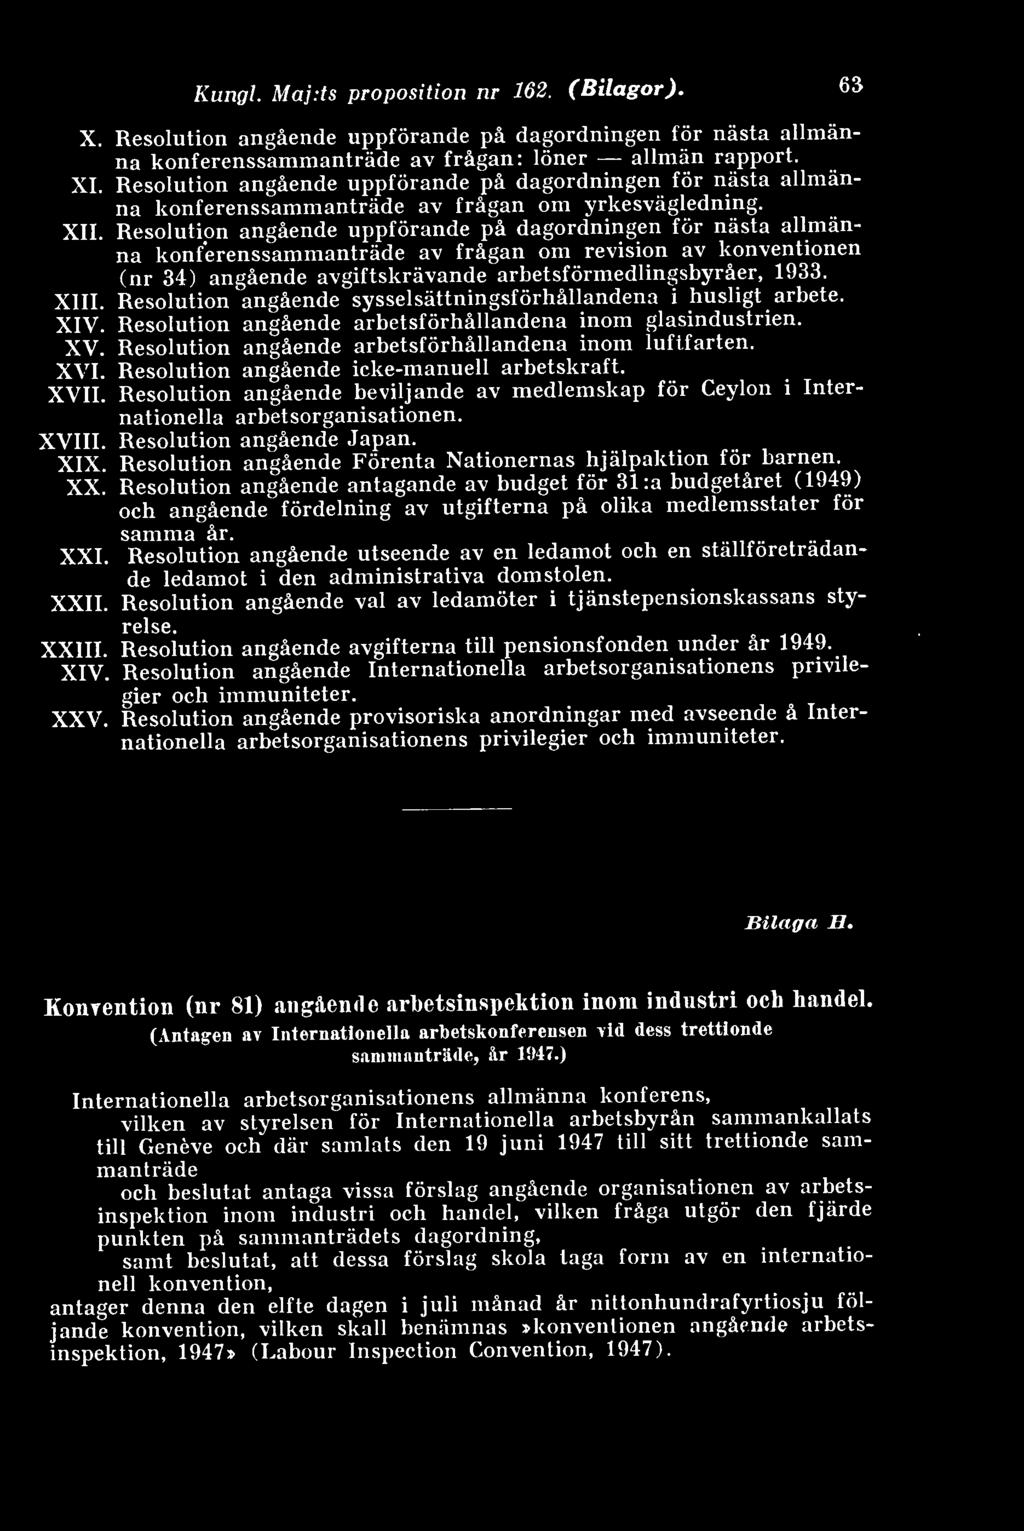 Resolution angående uppförande på dagordningen för nästa allmänna konferenssammanträde av frågan om revision av konventionen (nr 34) angående avgiftskrävande arbetsförmedlingsbyråer, 1933. XIII.